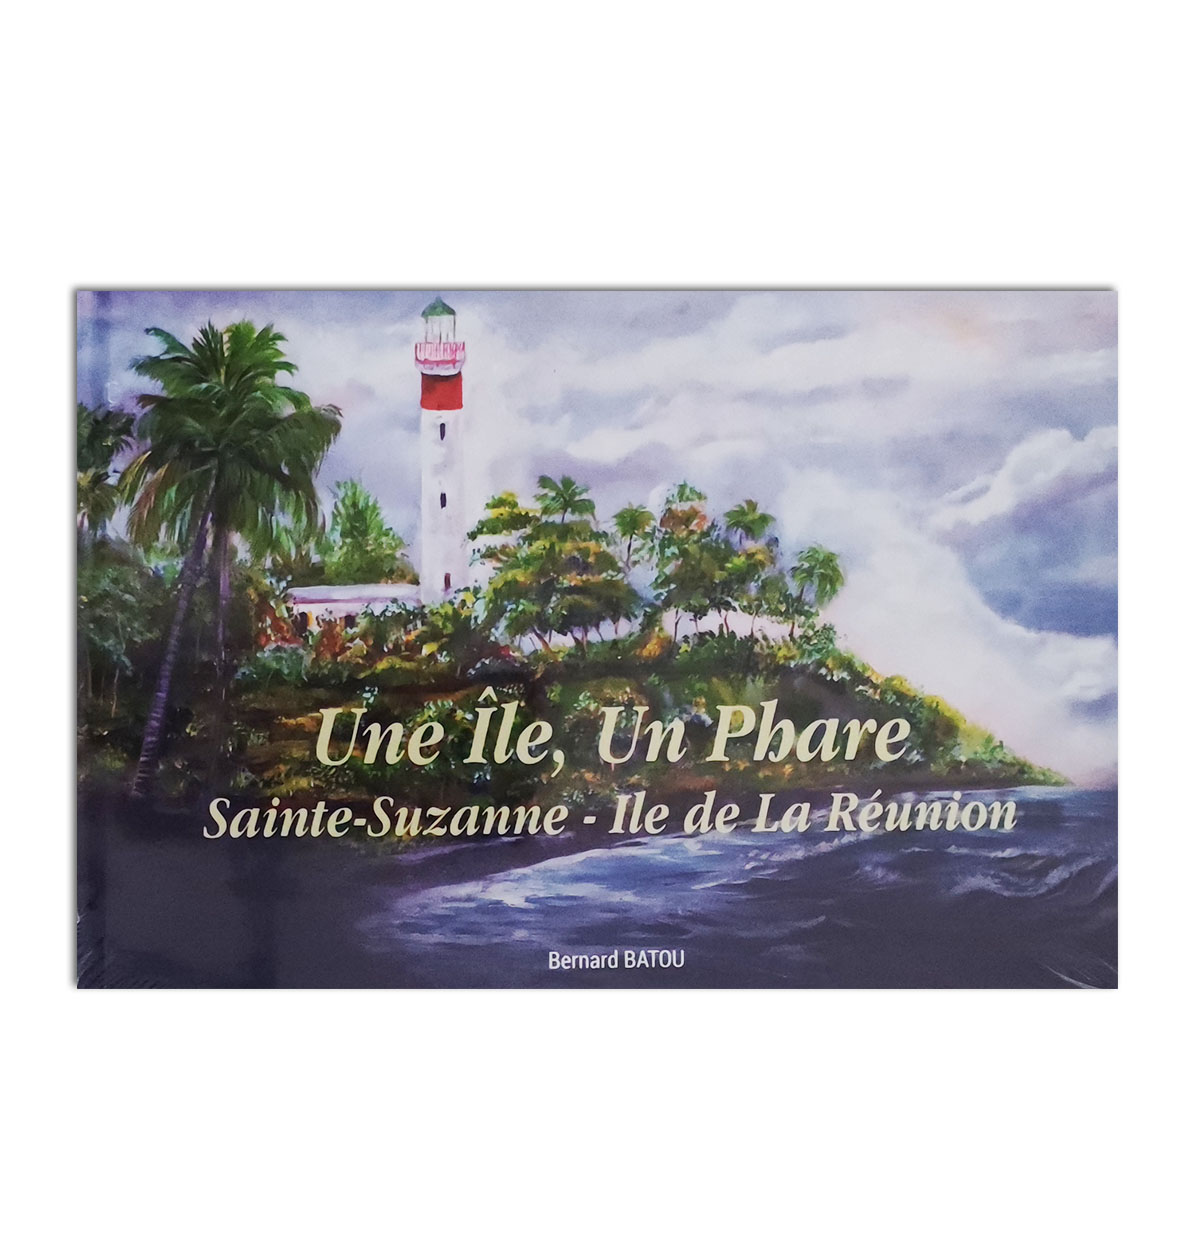 Une île, un phare: Sainte-Suzanne - Ile de la Réunion